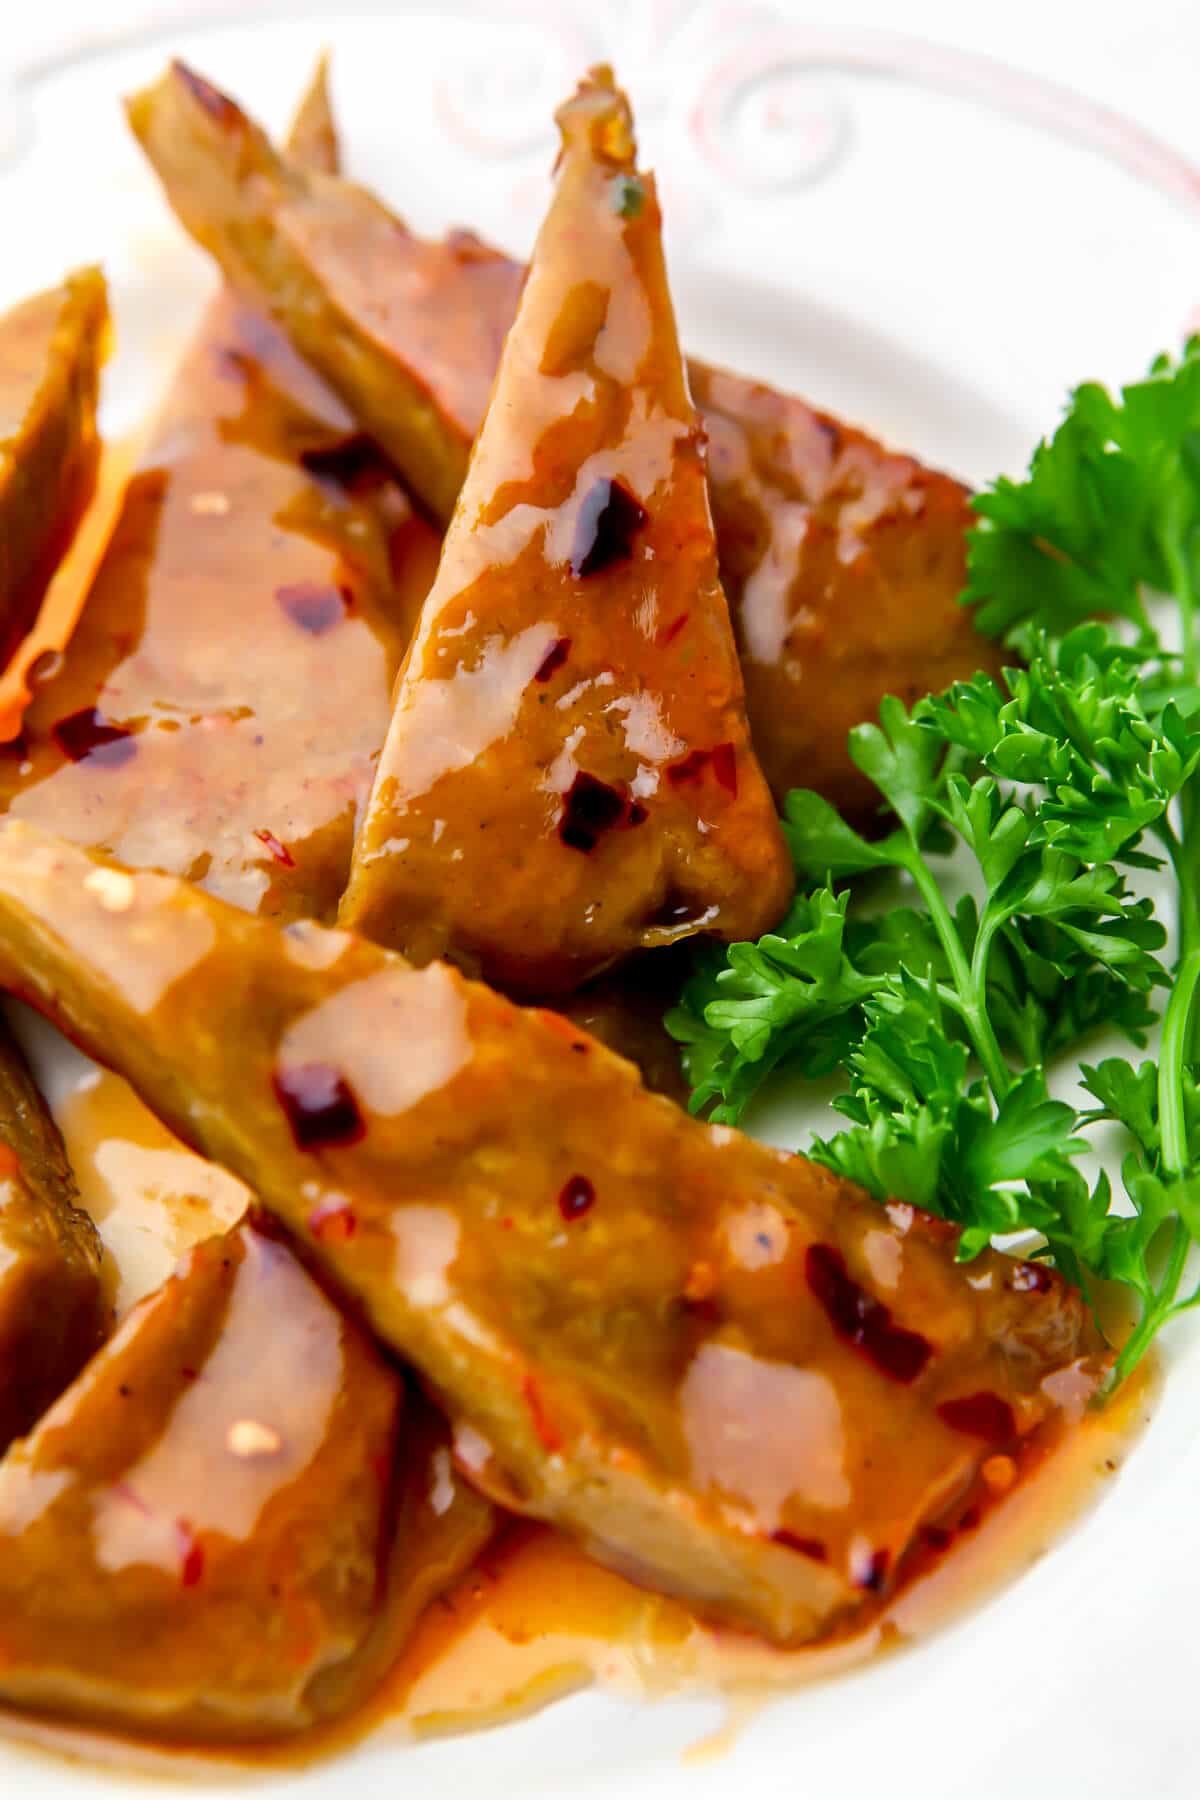 Sweet Thai chili sauce over vegan chicken wings.